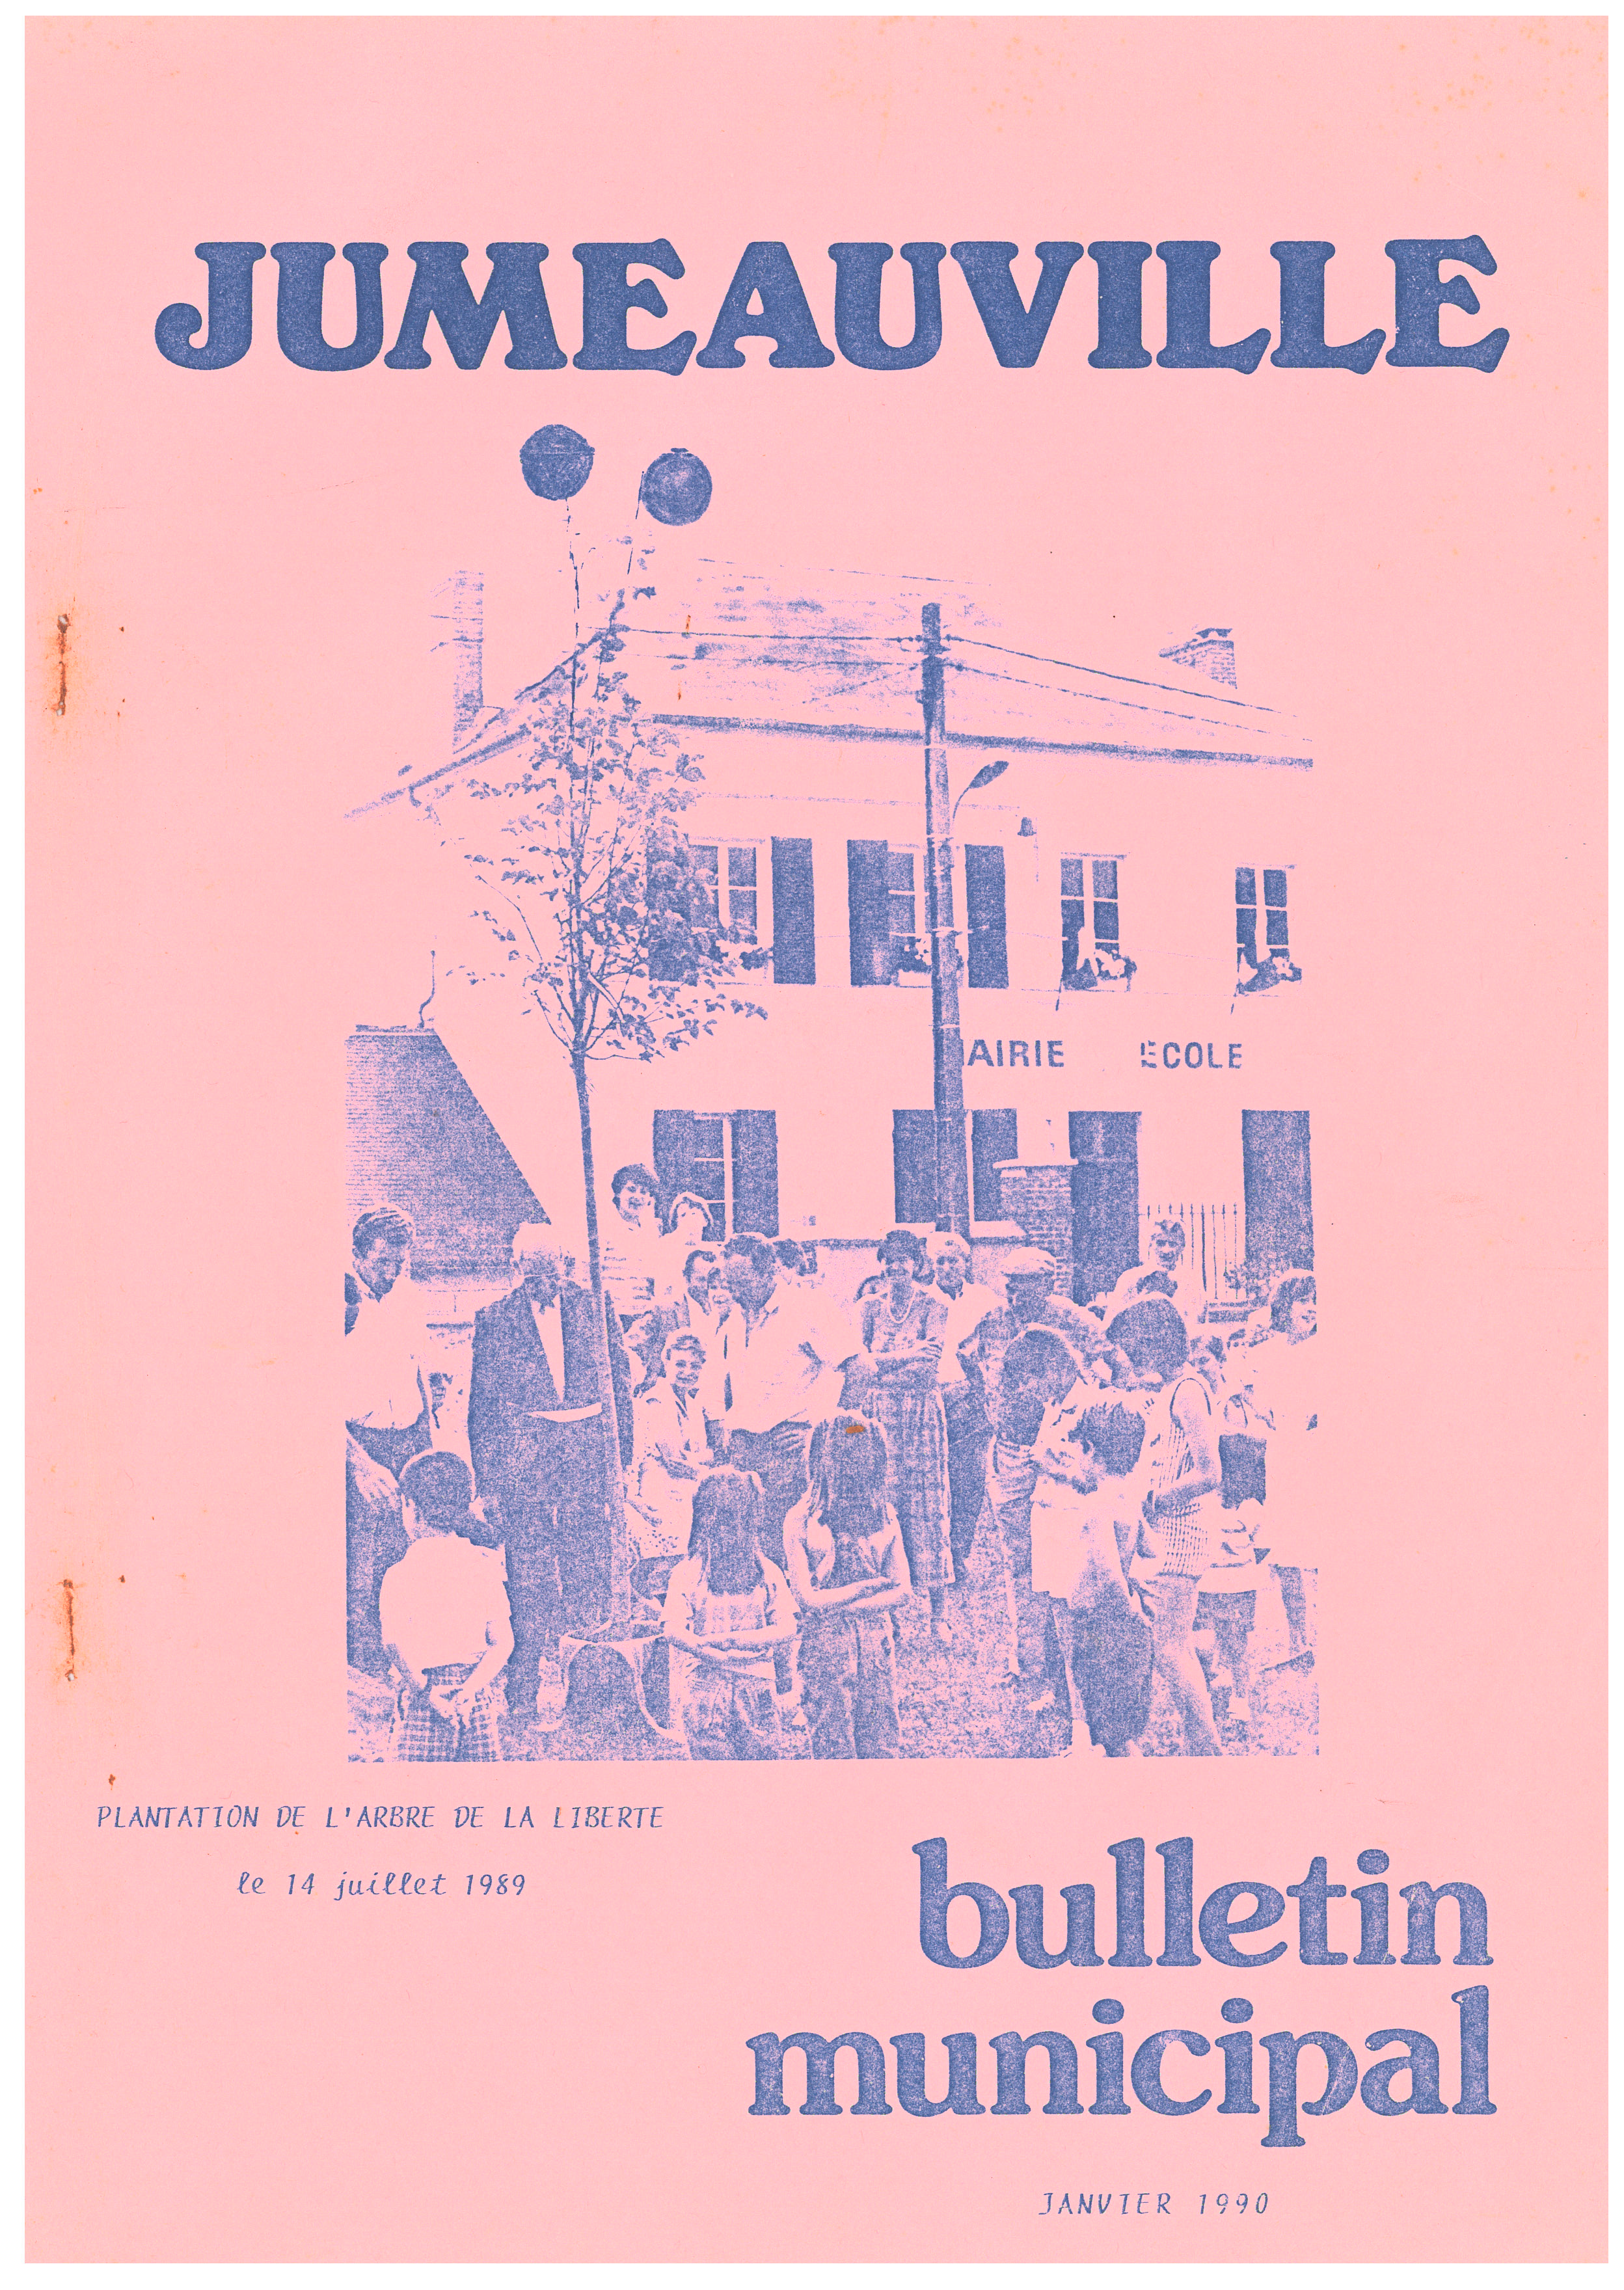 Bulletin Municipal 1 1990